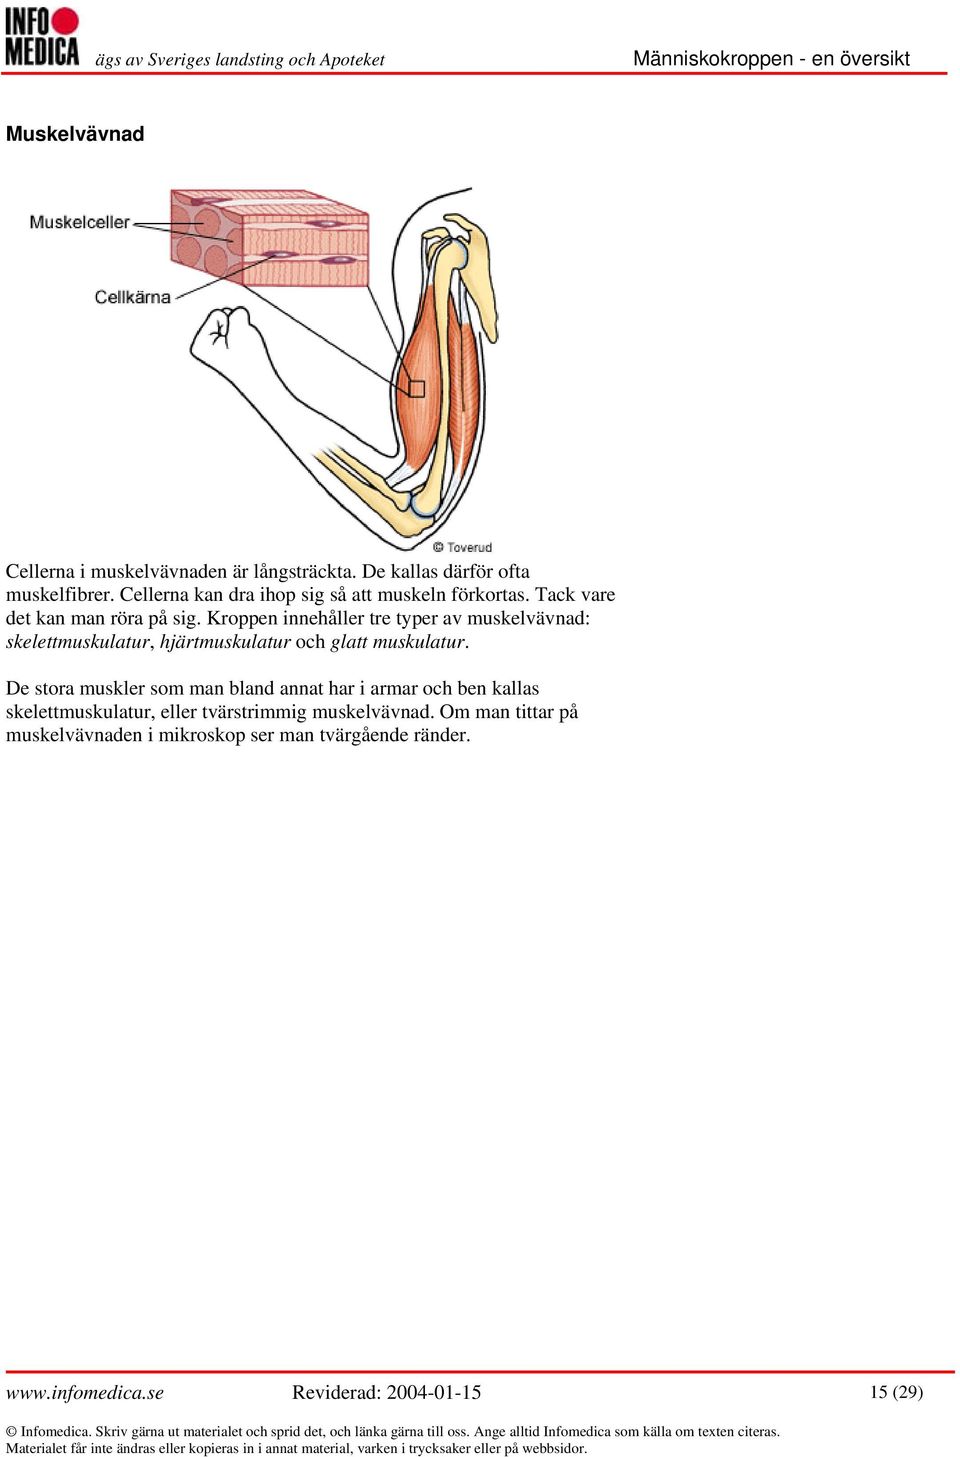 Kroppen innehåller tre typer av muskelvävnad: skelettmuskulatur, hjärtmuskulatur och glatt muskulatur.